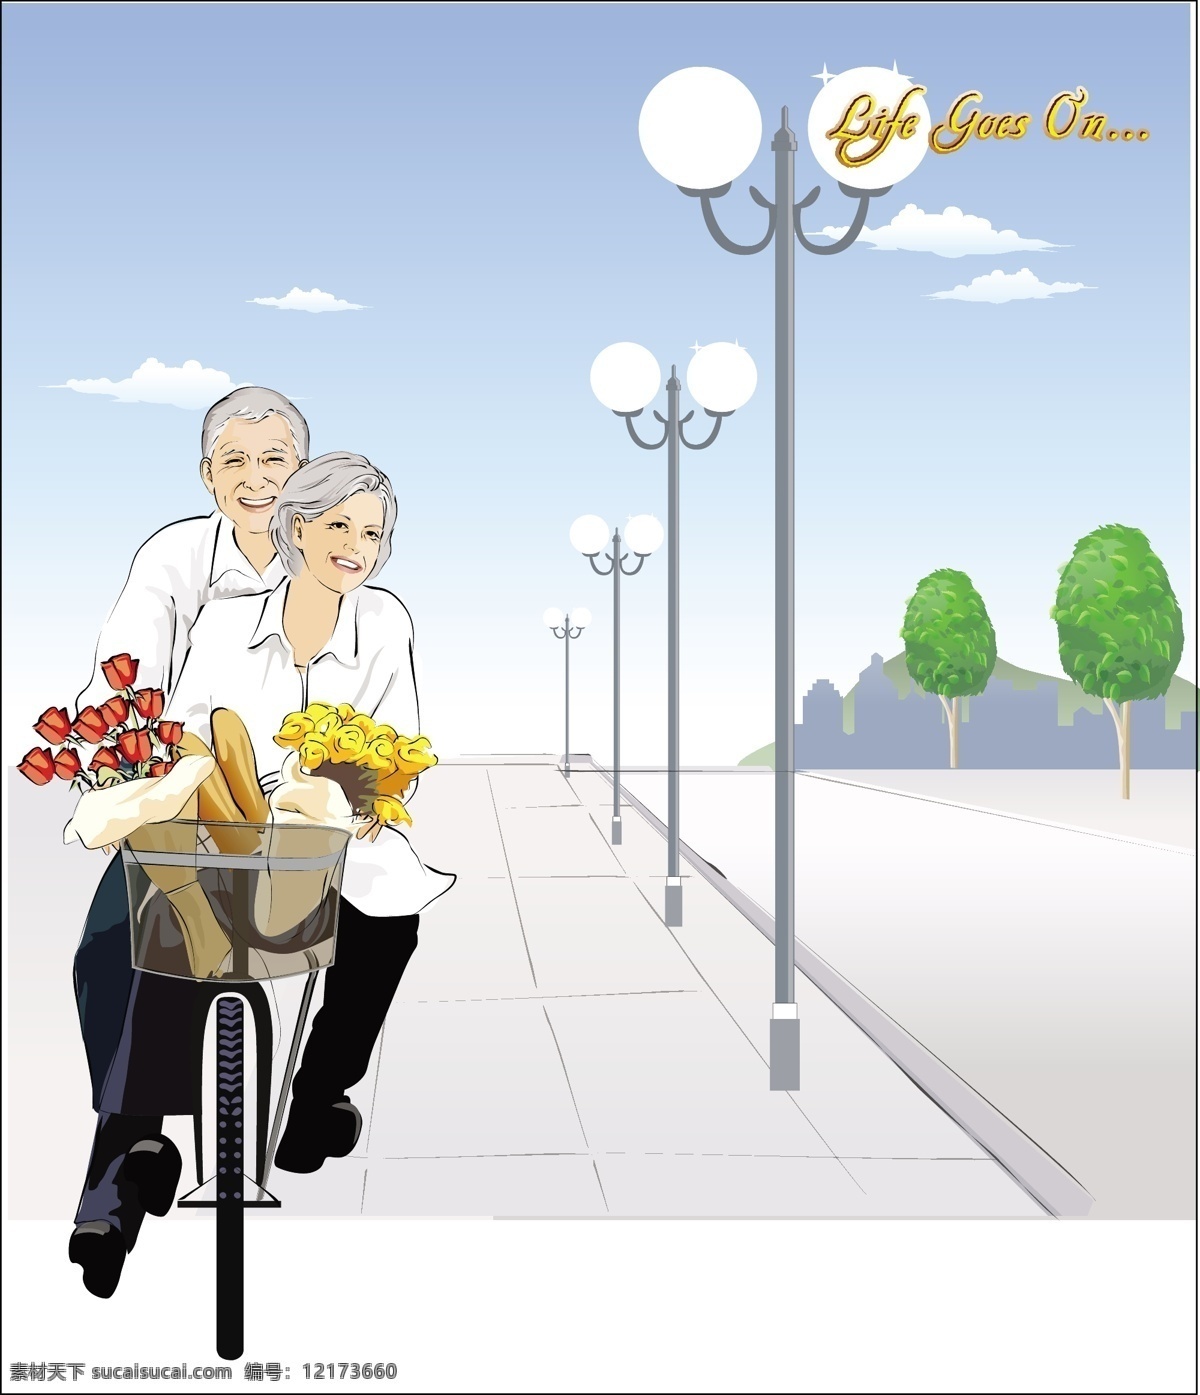 幸福的晚年 骑 自行车 去 买 花 鲜花 买花 路灯 道路 城市 白发苍苍 老年人 夫妻 恩爱 幸福 晚年 爷爷 奶奶 矢量 夕阳红 老人 白色